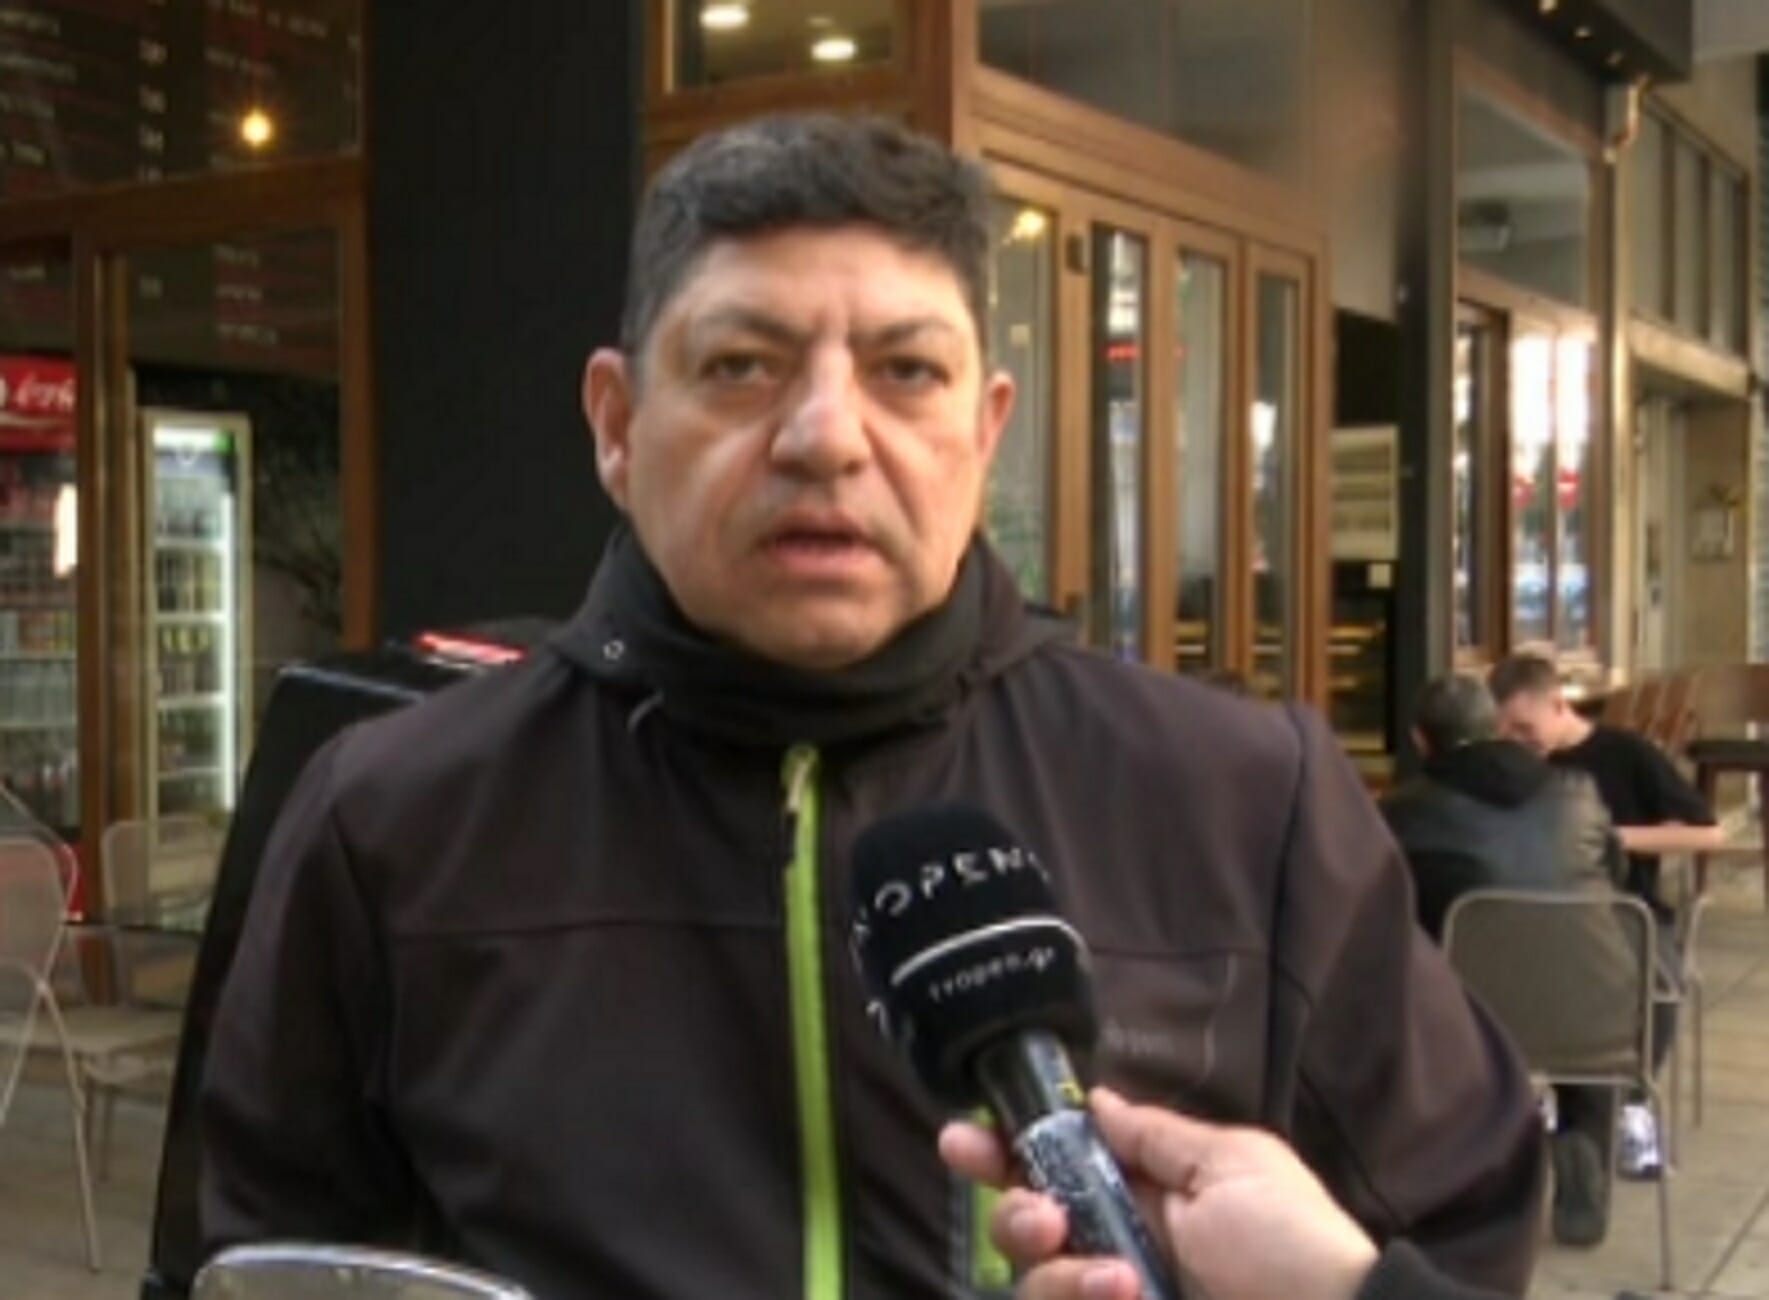 Θεσσαλονίκη: Δημοσιογράφος έγινε ντελιβεράς! Γύρισε σελίδα μετά από 35 χρόνια στην Ελευθεροτυπία (Βίντεο)